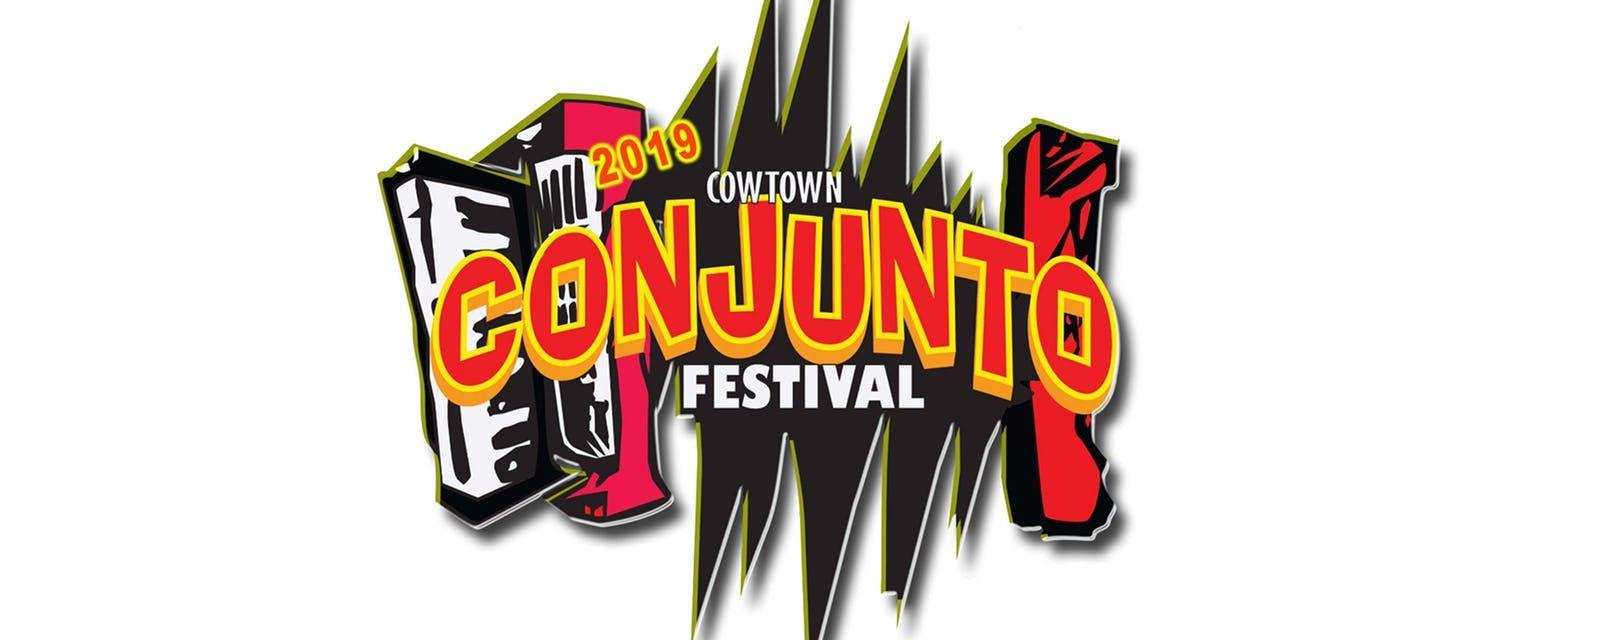 Cojunto Logo - 8th Annual Cowtown Conjunto Festival - Billy Bob's Texas